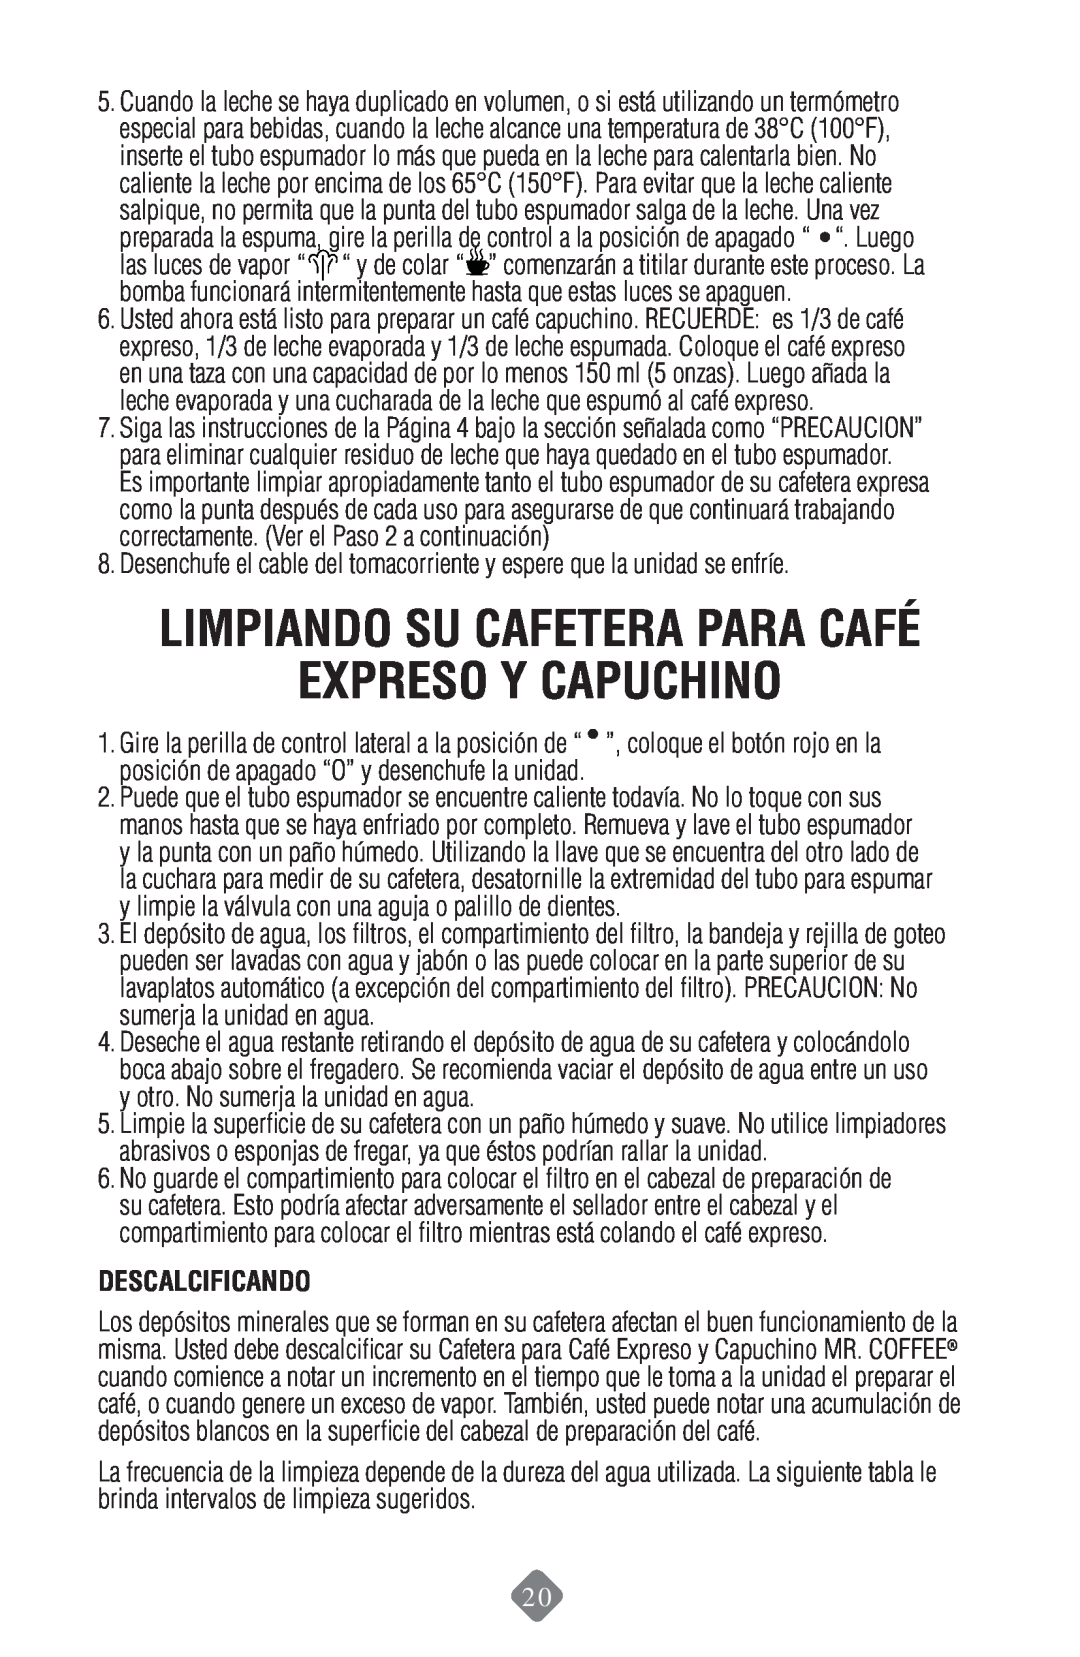 Mr. Coffee ECMP50 instruction manual Expreso Y Capuchino, Limpiando Su Cafetera Para Café, Descalcificando 